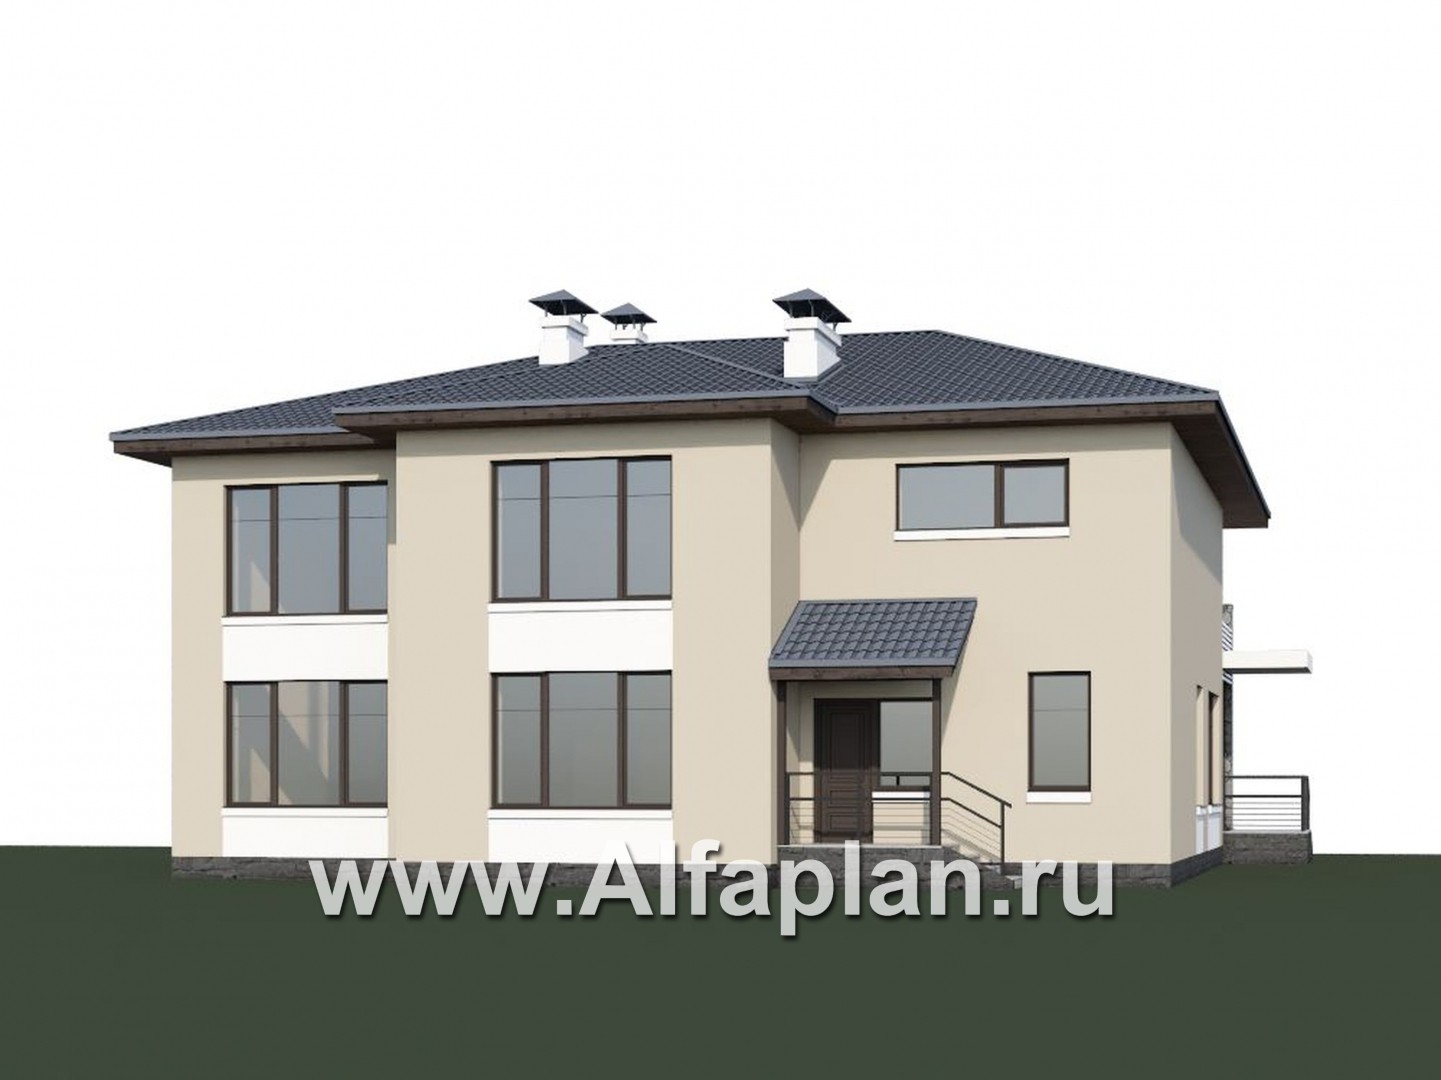 Проекты домов Альфаплан - «Семь звезд» - современный коттедж с панорамными окнами - дополнительное изображение №1